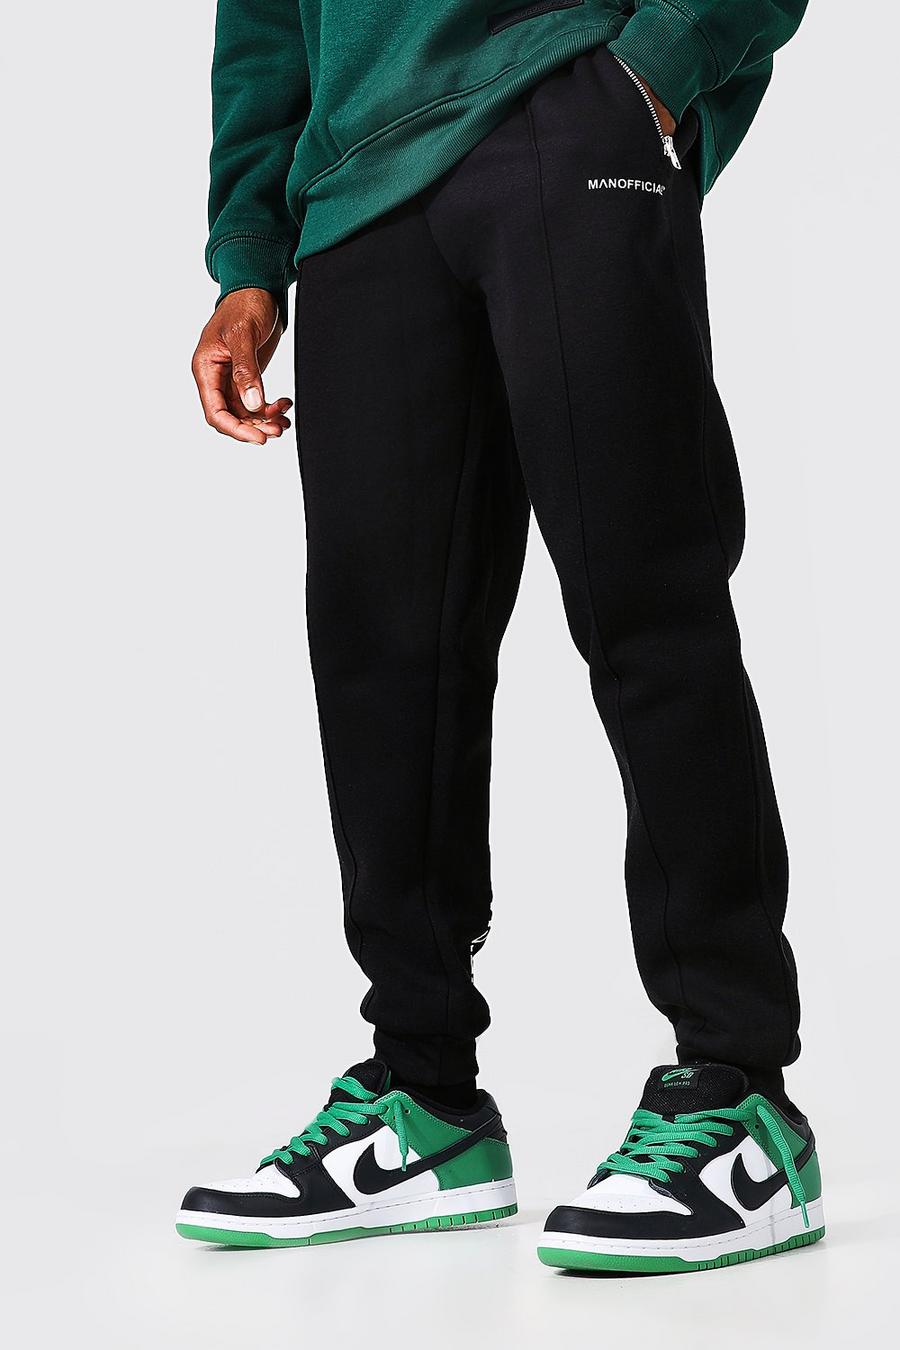 שחור negro מכנסי ריצה עם קפל והדפס Man Official בגב